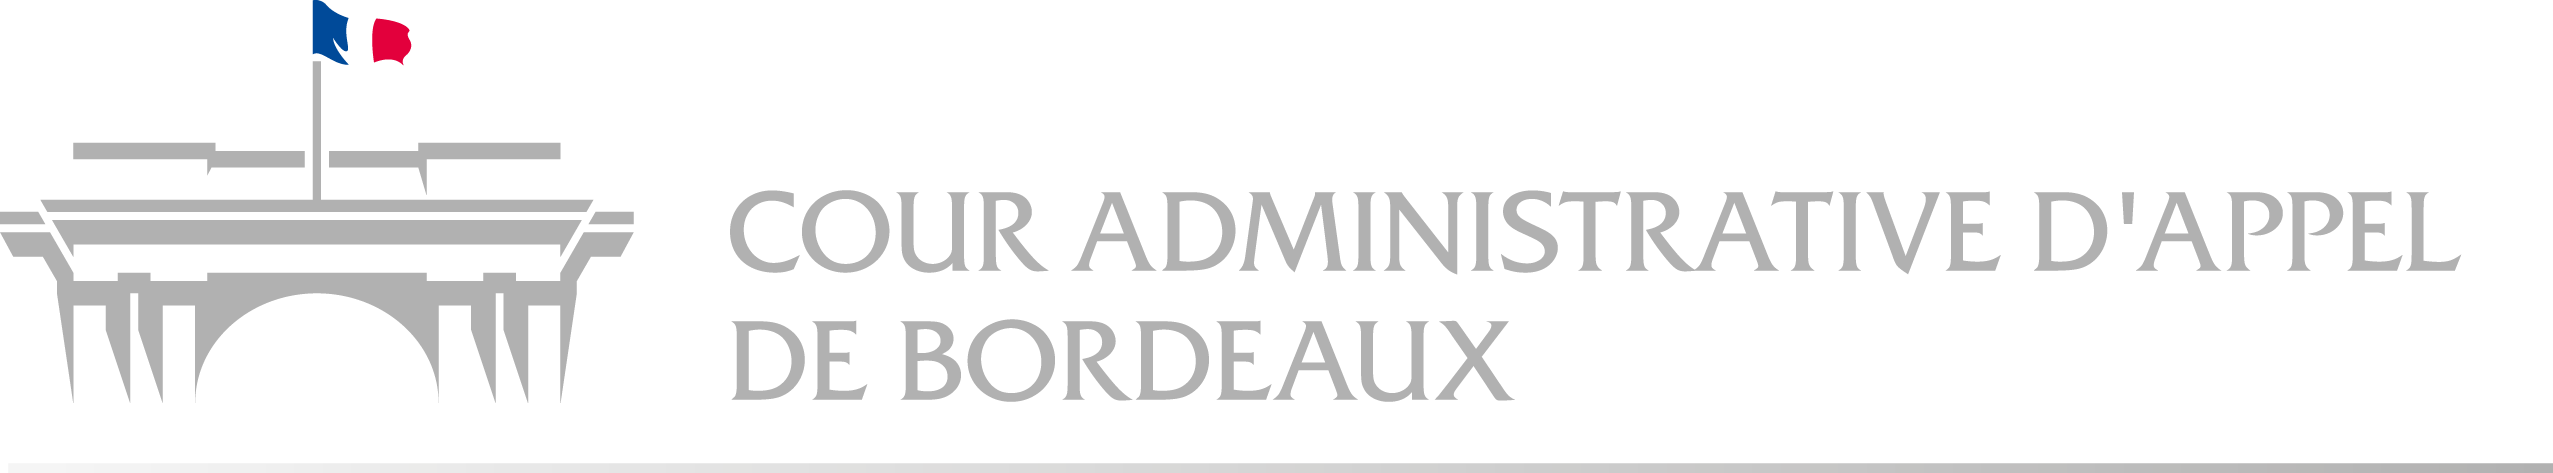 Logo Cour administrative d'appel de Bordeaux